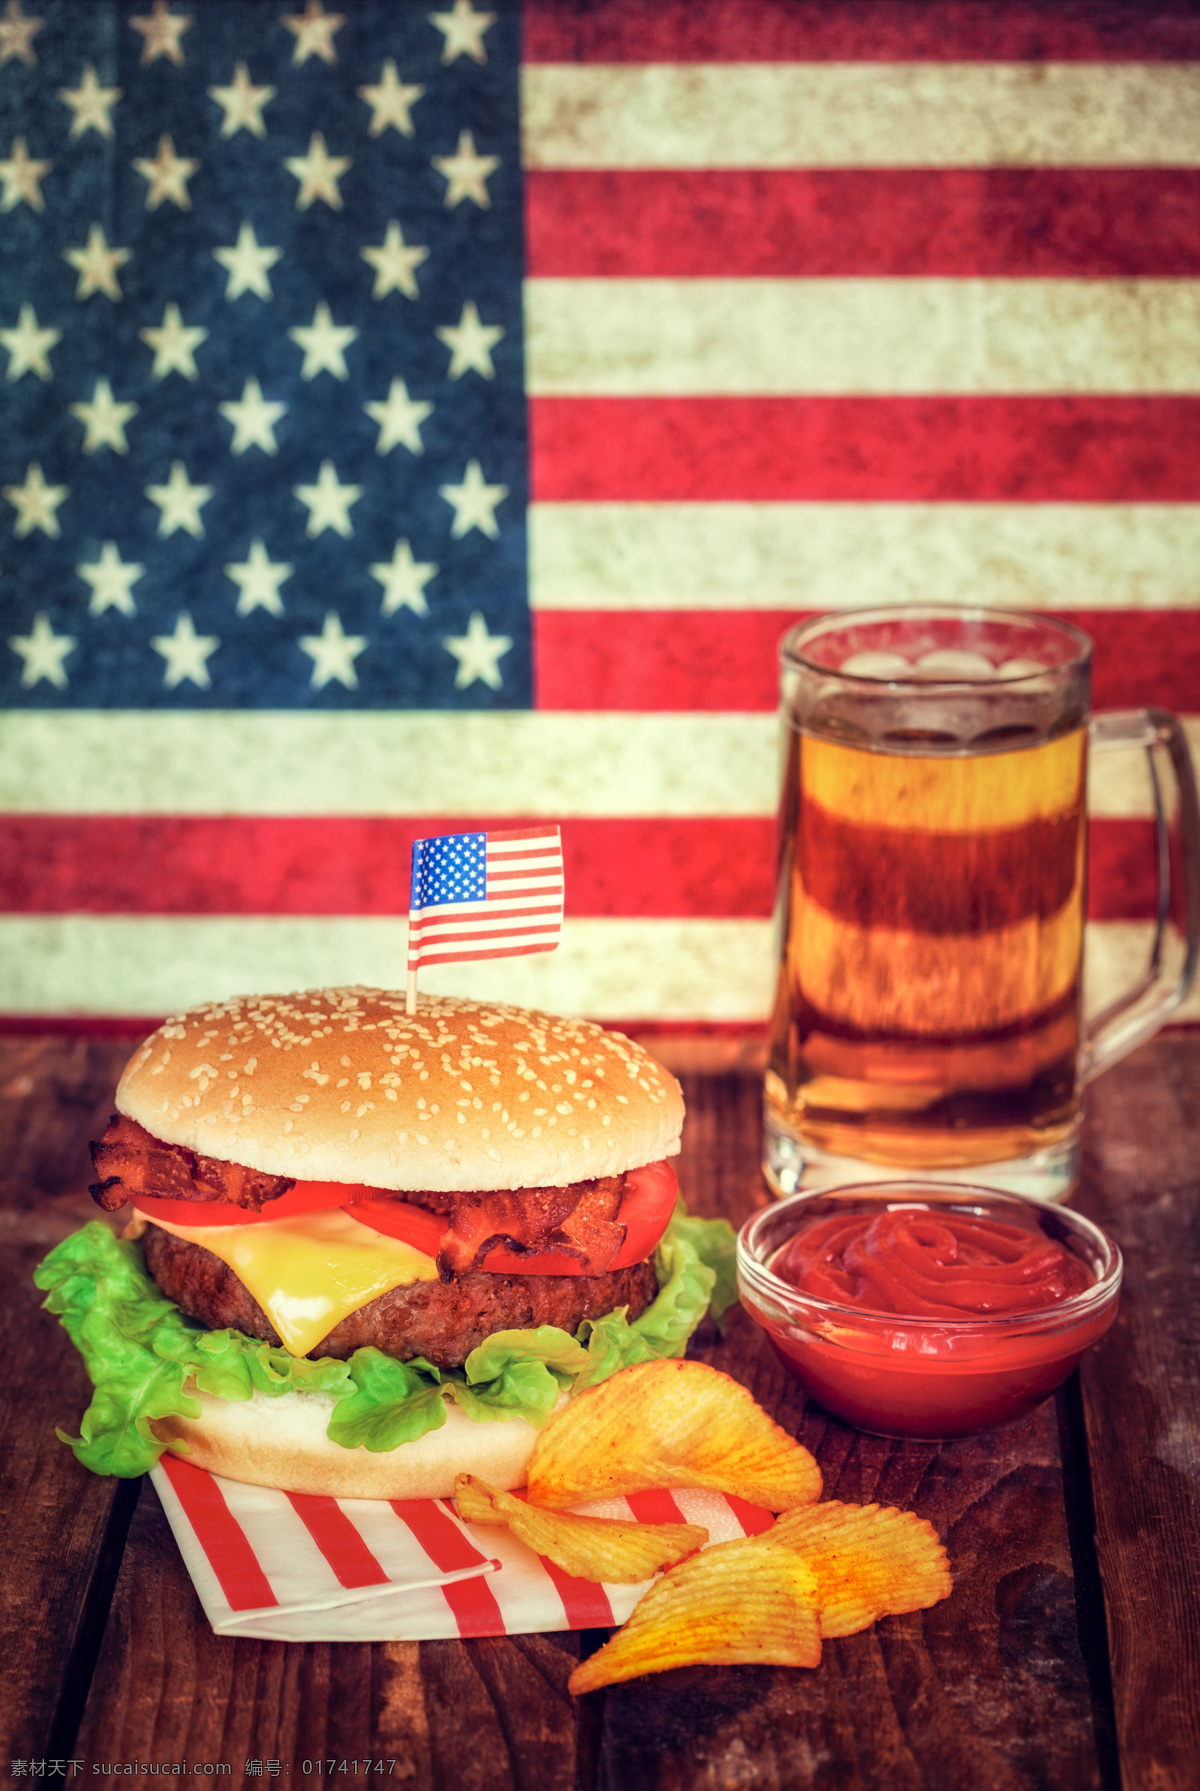 美国 汉堡 啤酒 食物 餐饮美食 快餐美食 美国食物 番茄酱 薯片 美国国旗 外国美食 红色